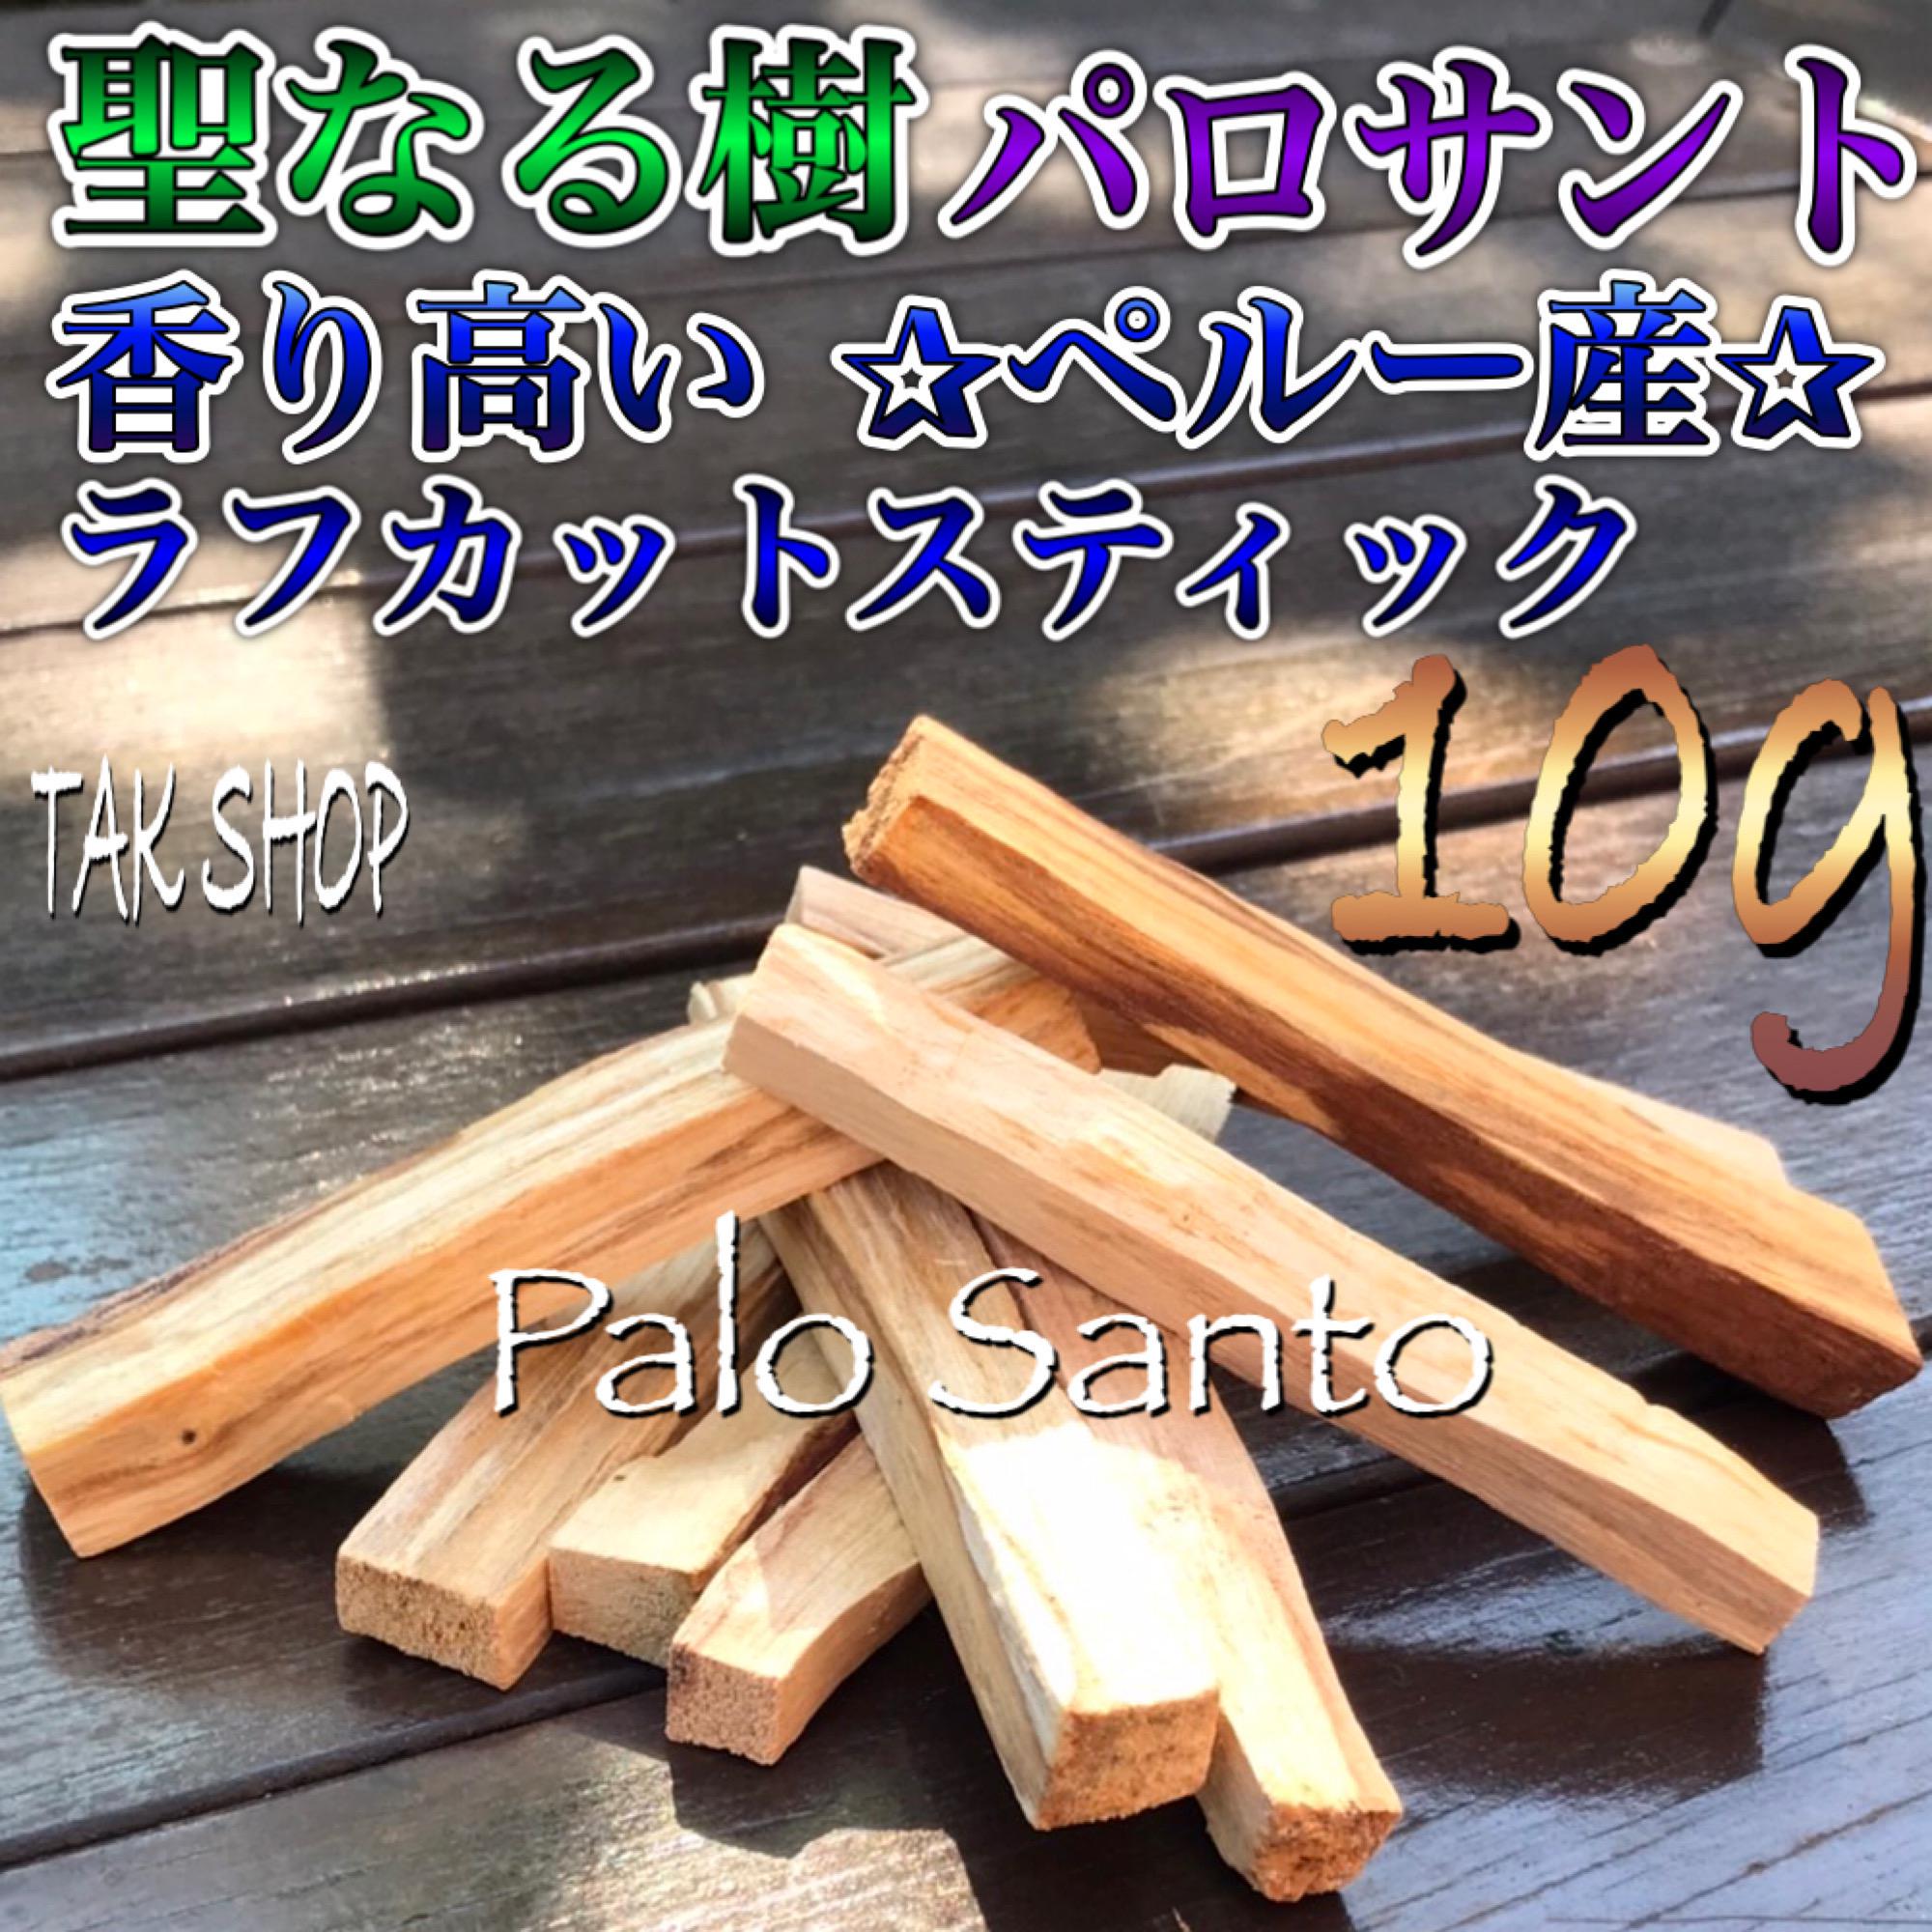 希少聖なる樹 パロサント 香木 10g1〜2本「ペルー産」 木材・板 TAK